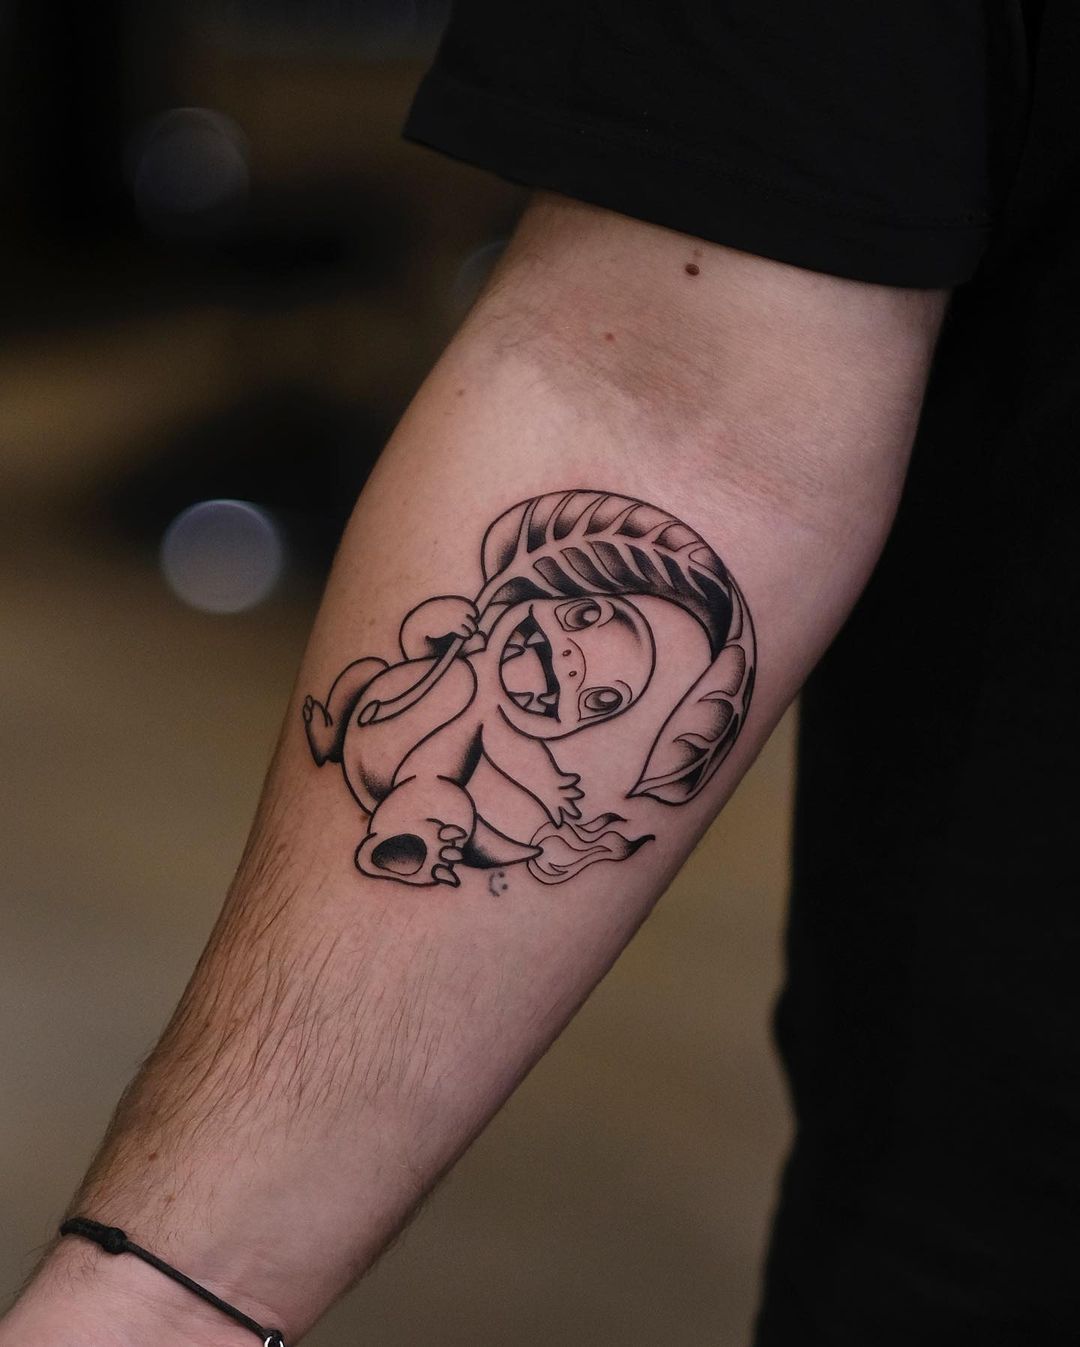 Ormo tatuażysta kreskówkowy